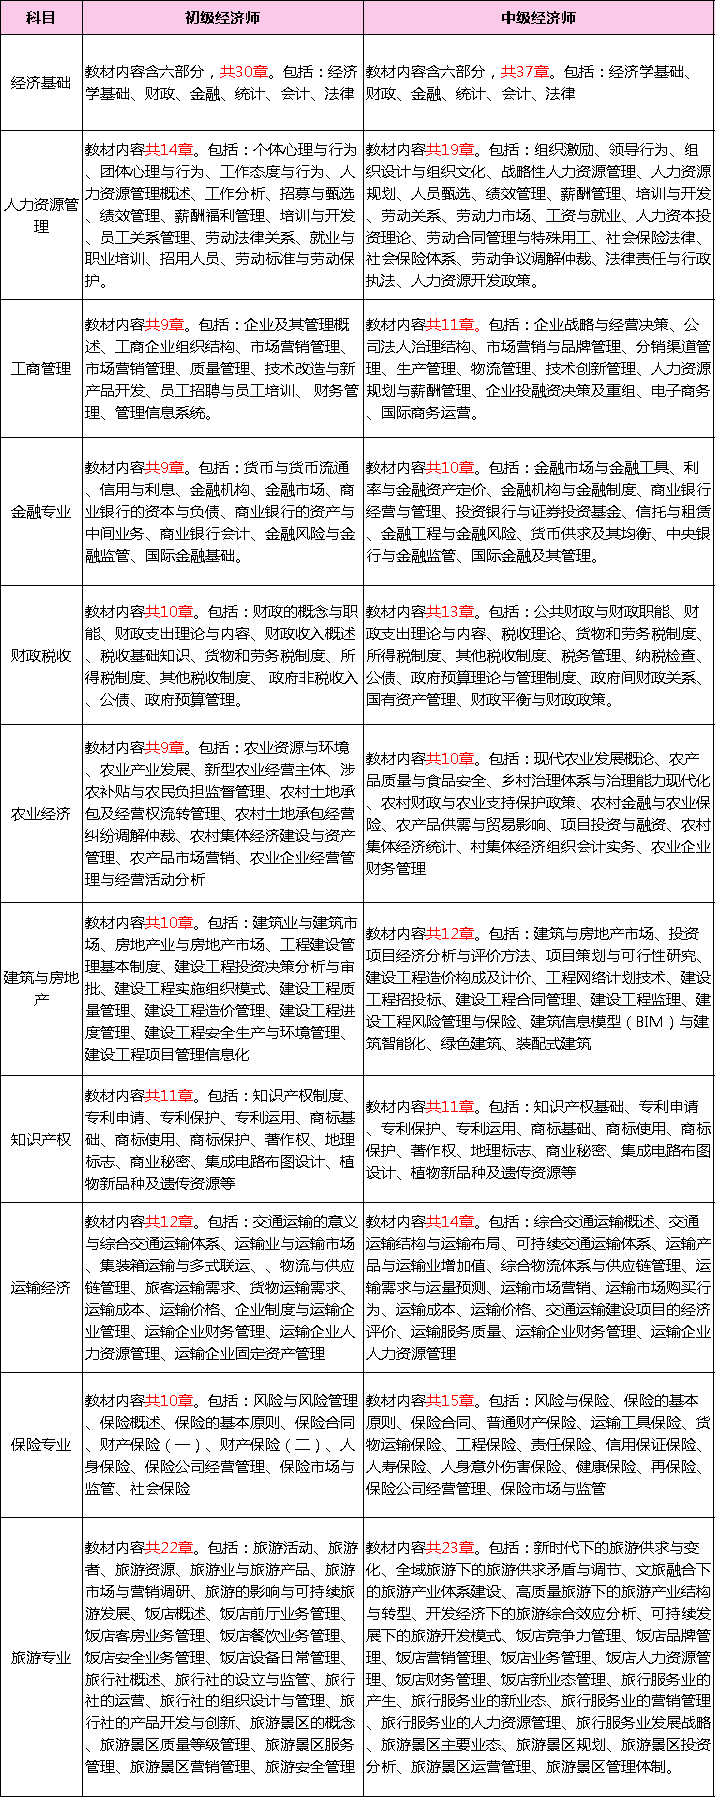 2023年上海中级经济师VS初级经济师考试内容对比